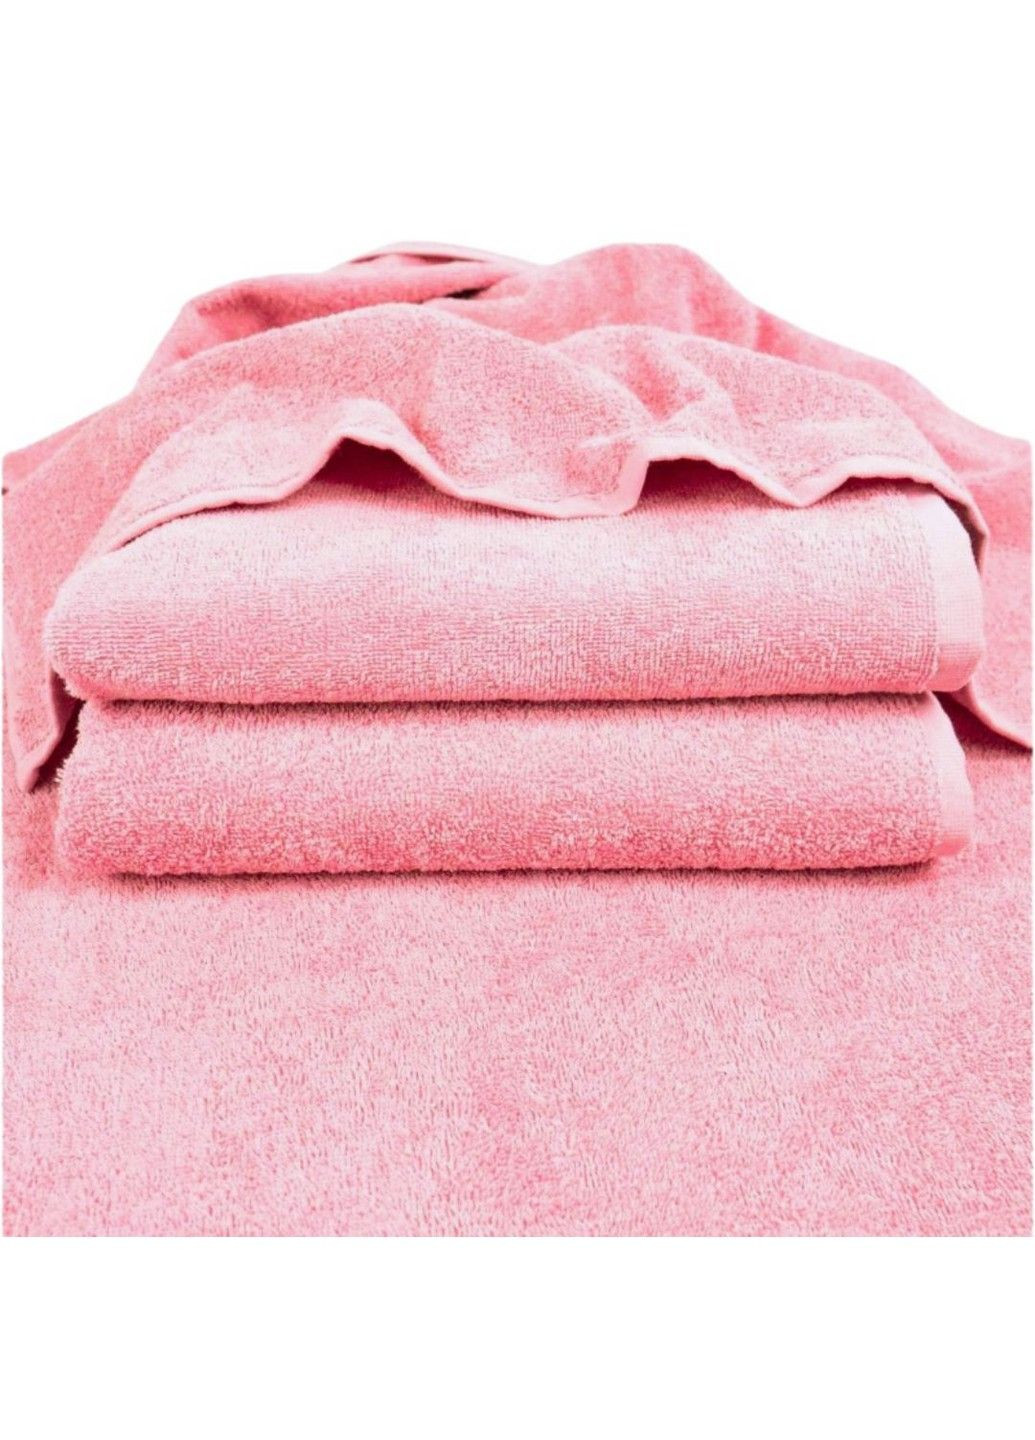 GM Textile полотенце махровое, 50*90 см коралловый производство - Узбекистан